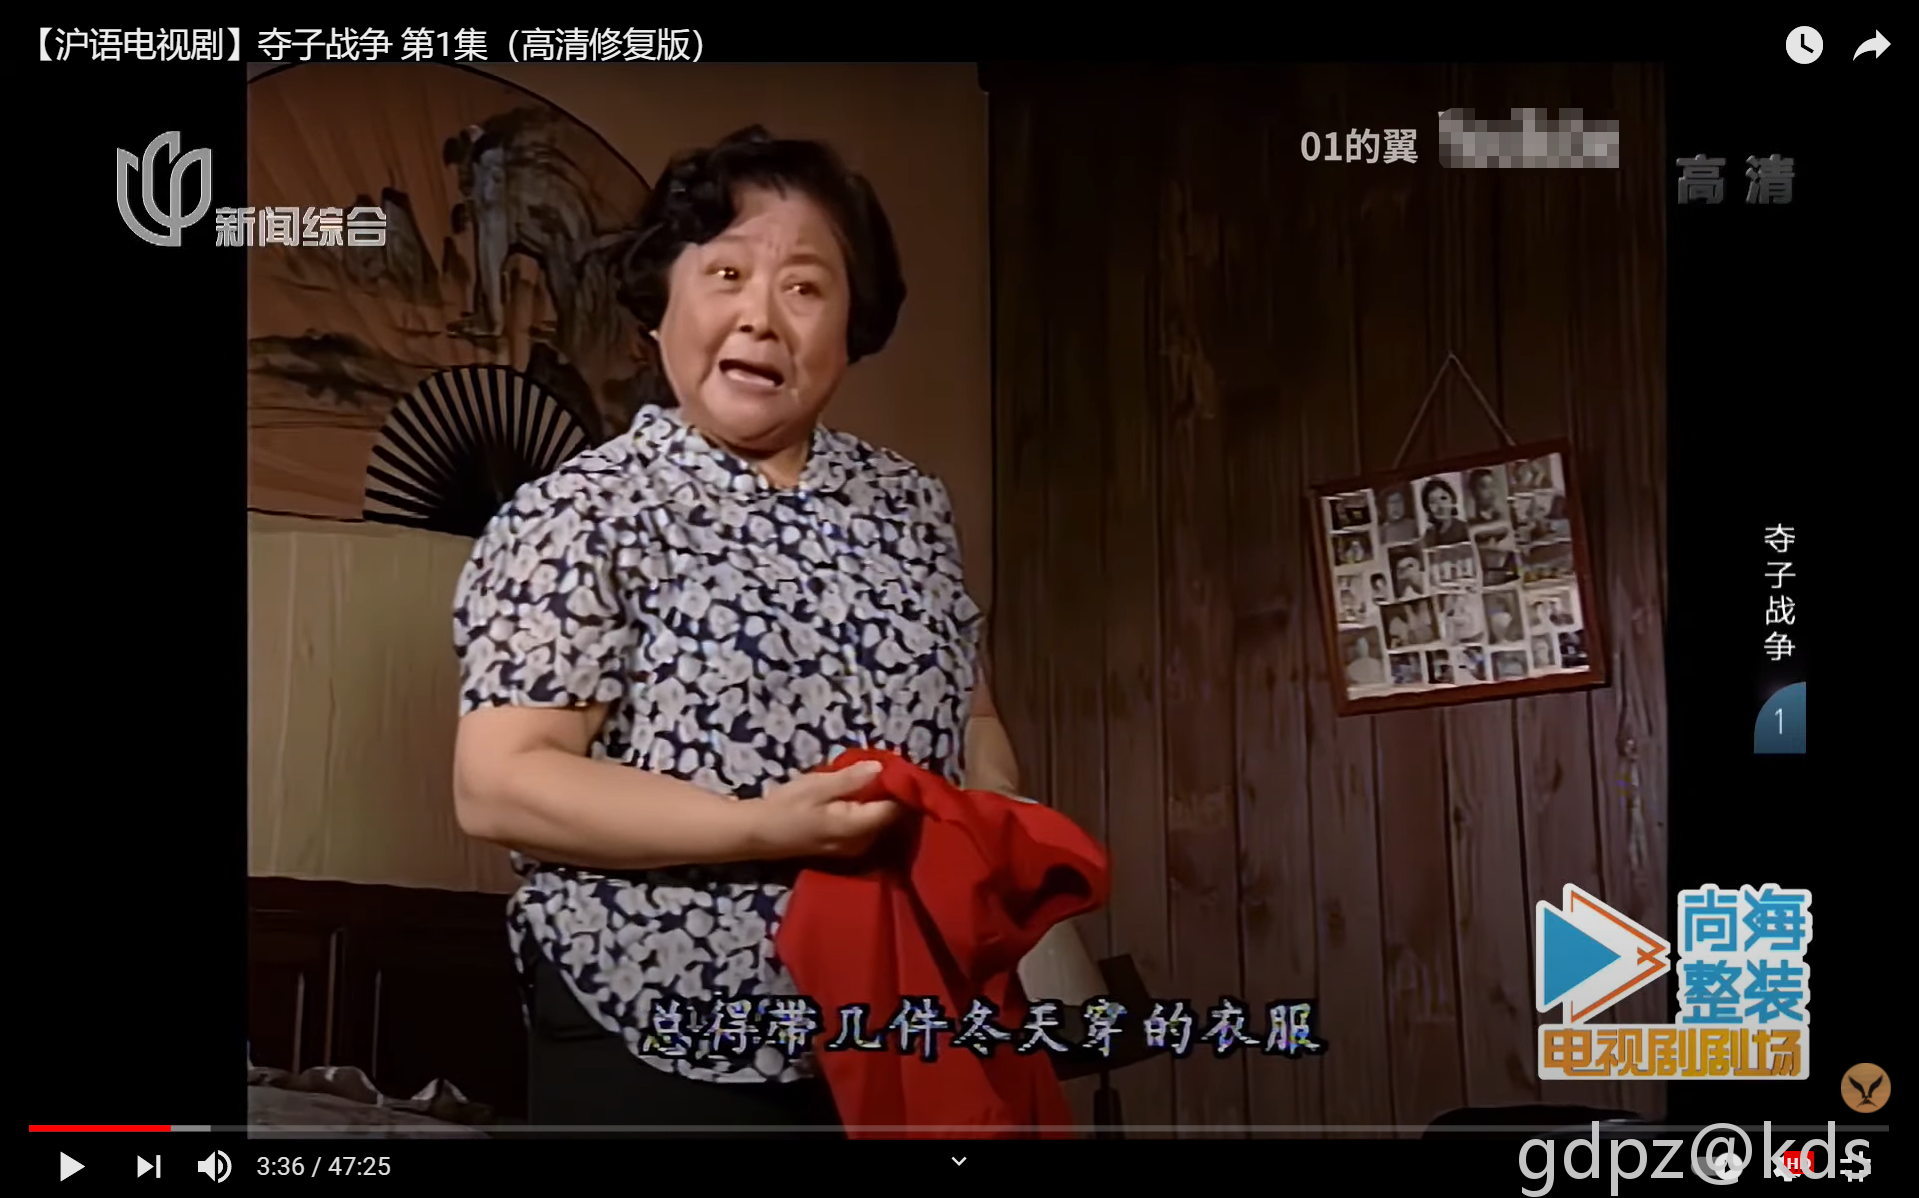 有录像机的帮忙录一下新闻综合频道的《夺子战争》,是沪语的